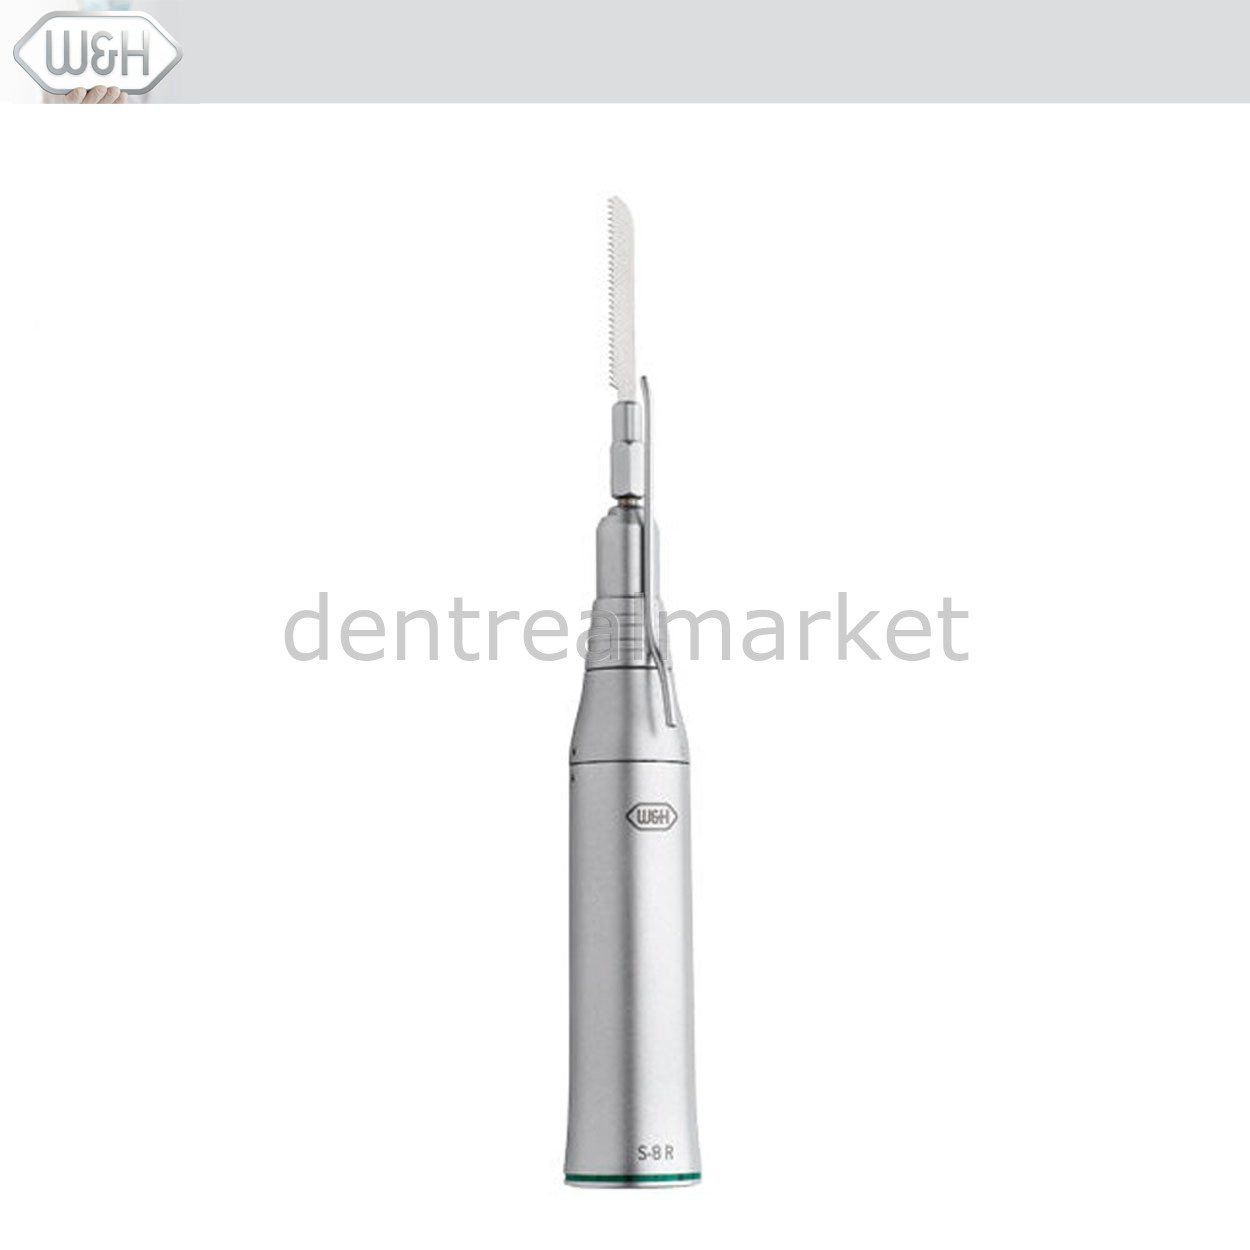 Dentrealmarket | W&H Dental Cerrahi Testere Piyasemeni - S8R İleri-Geri 25:1